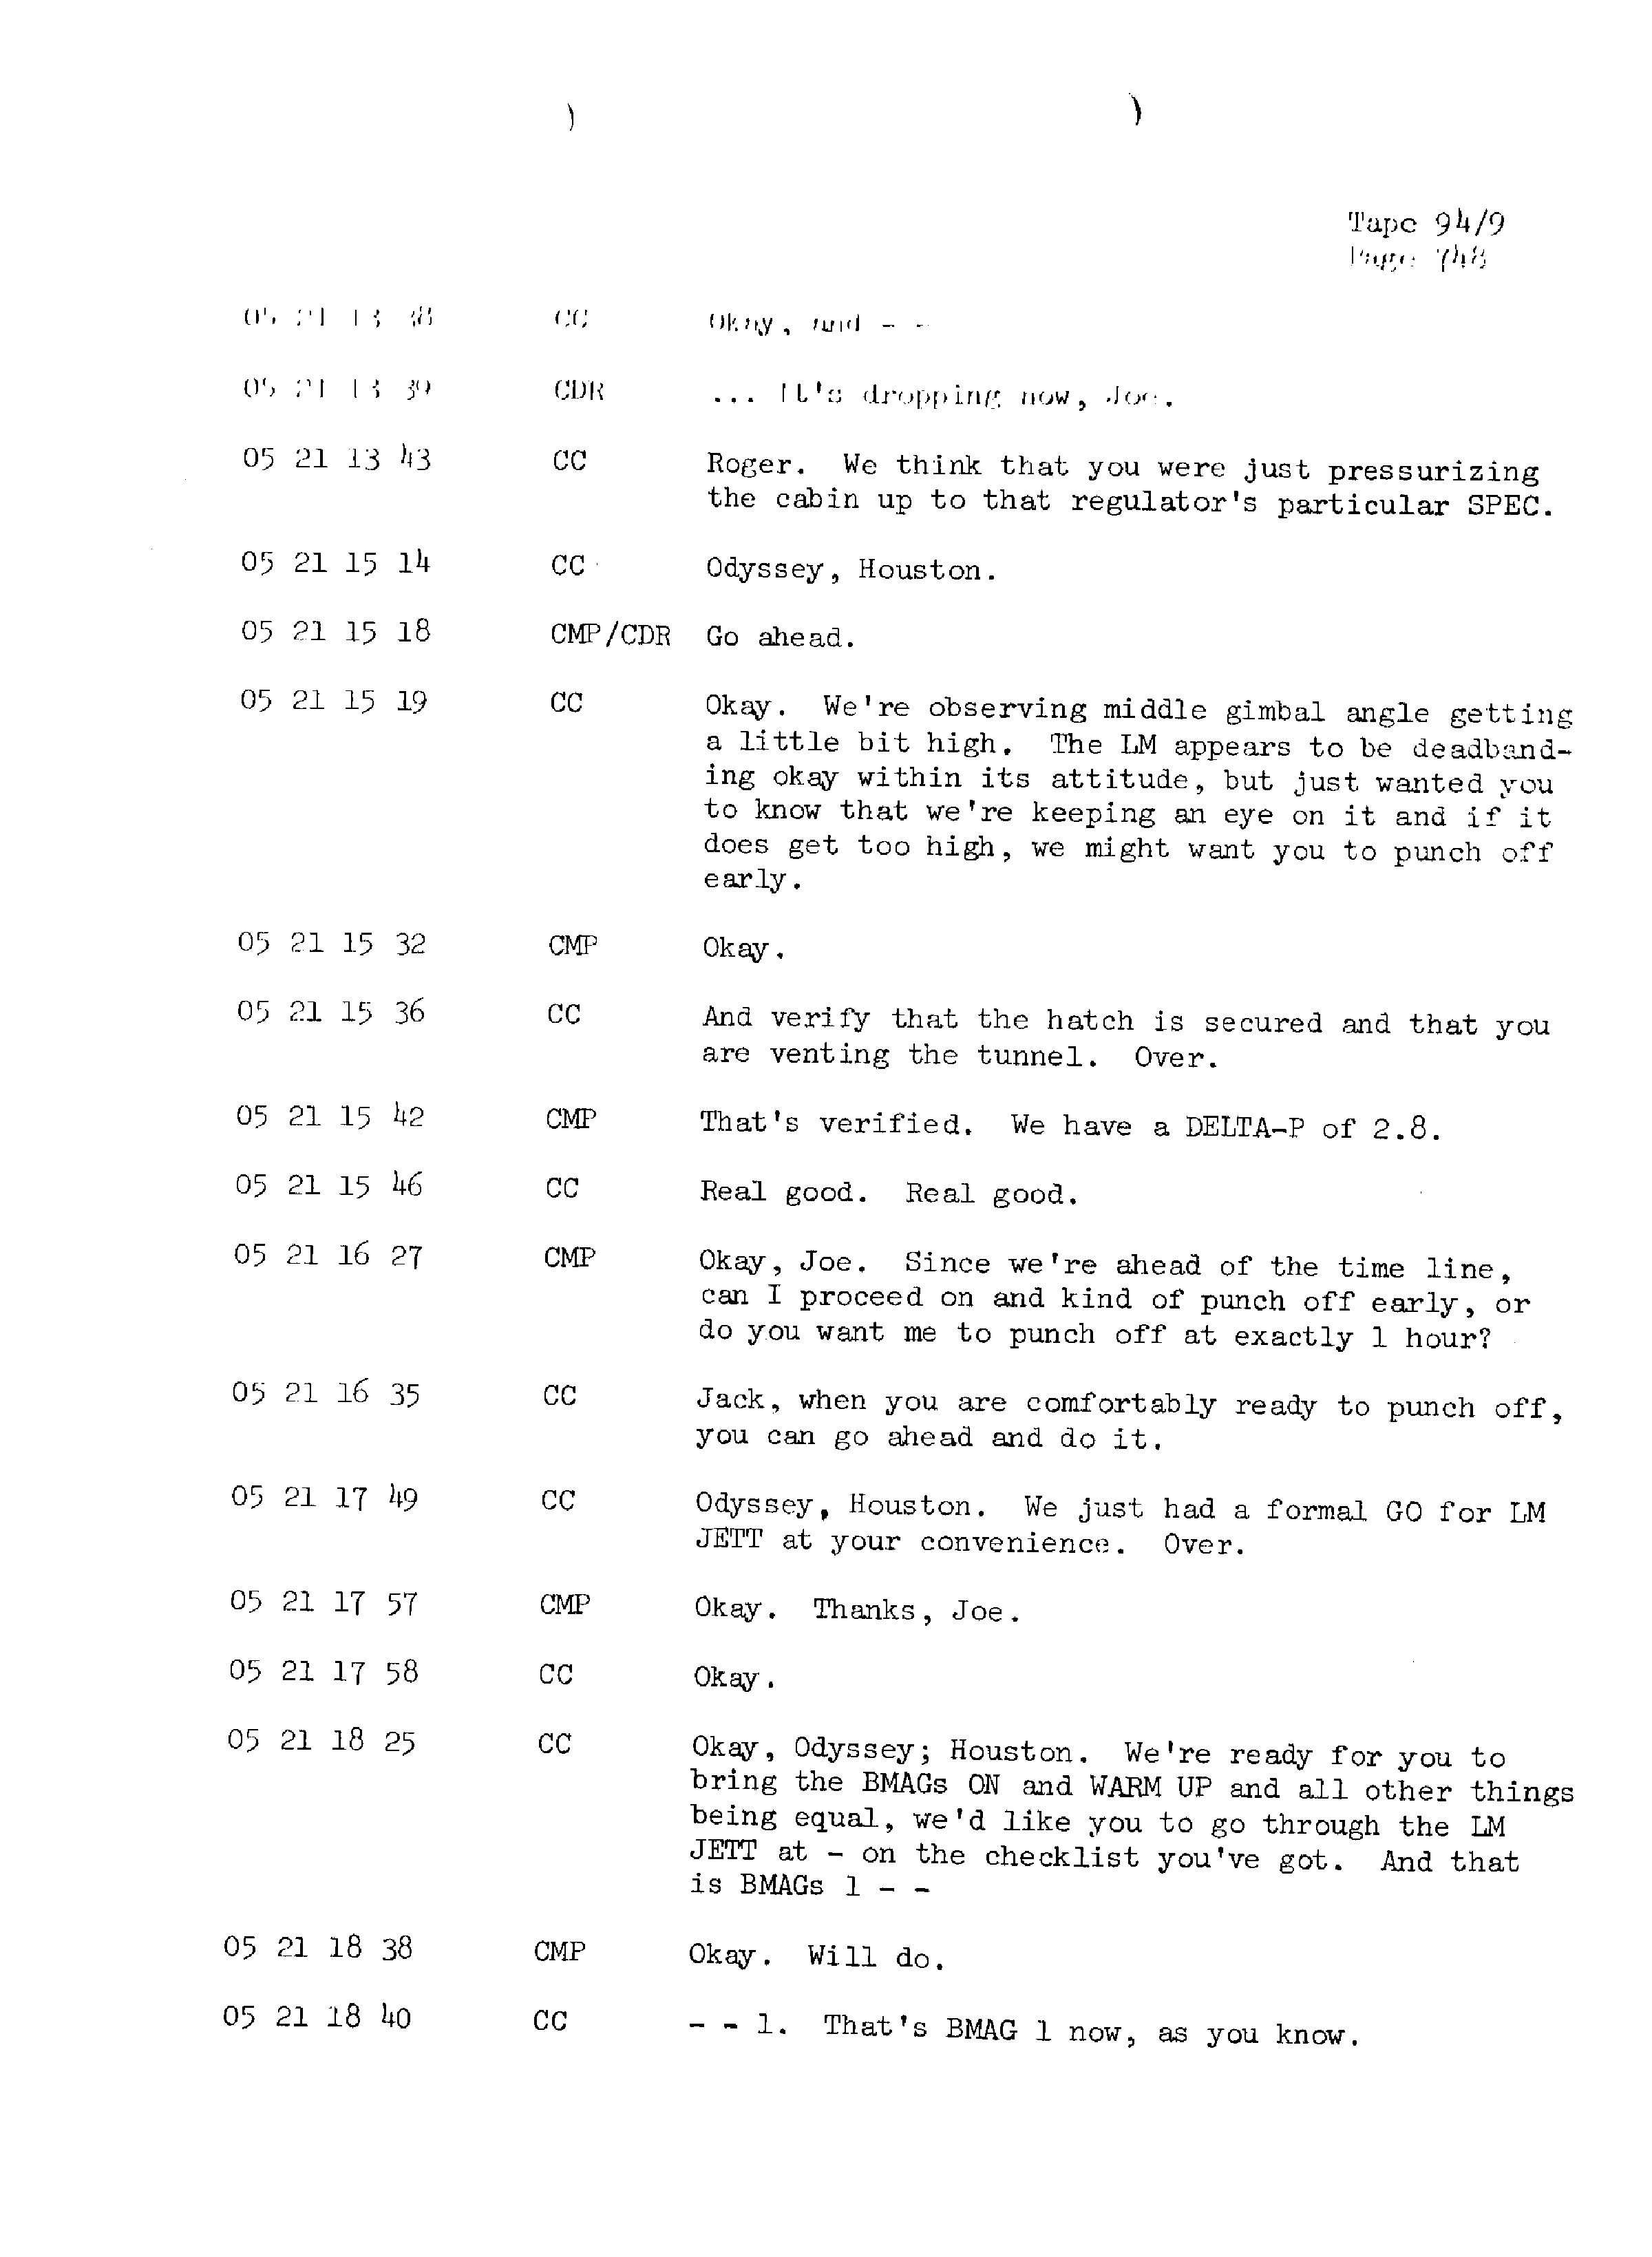 Page 755 of Apollo 13’s original transcript